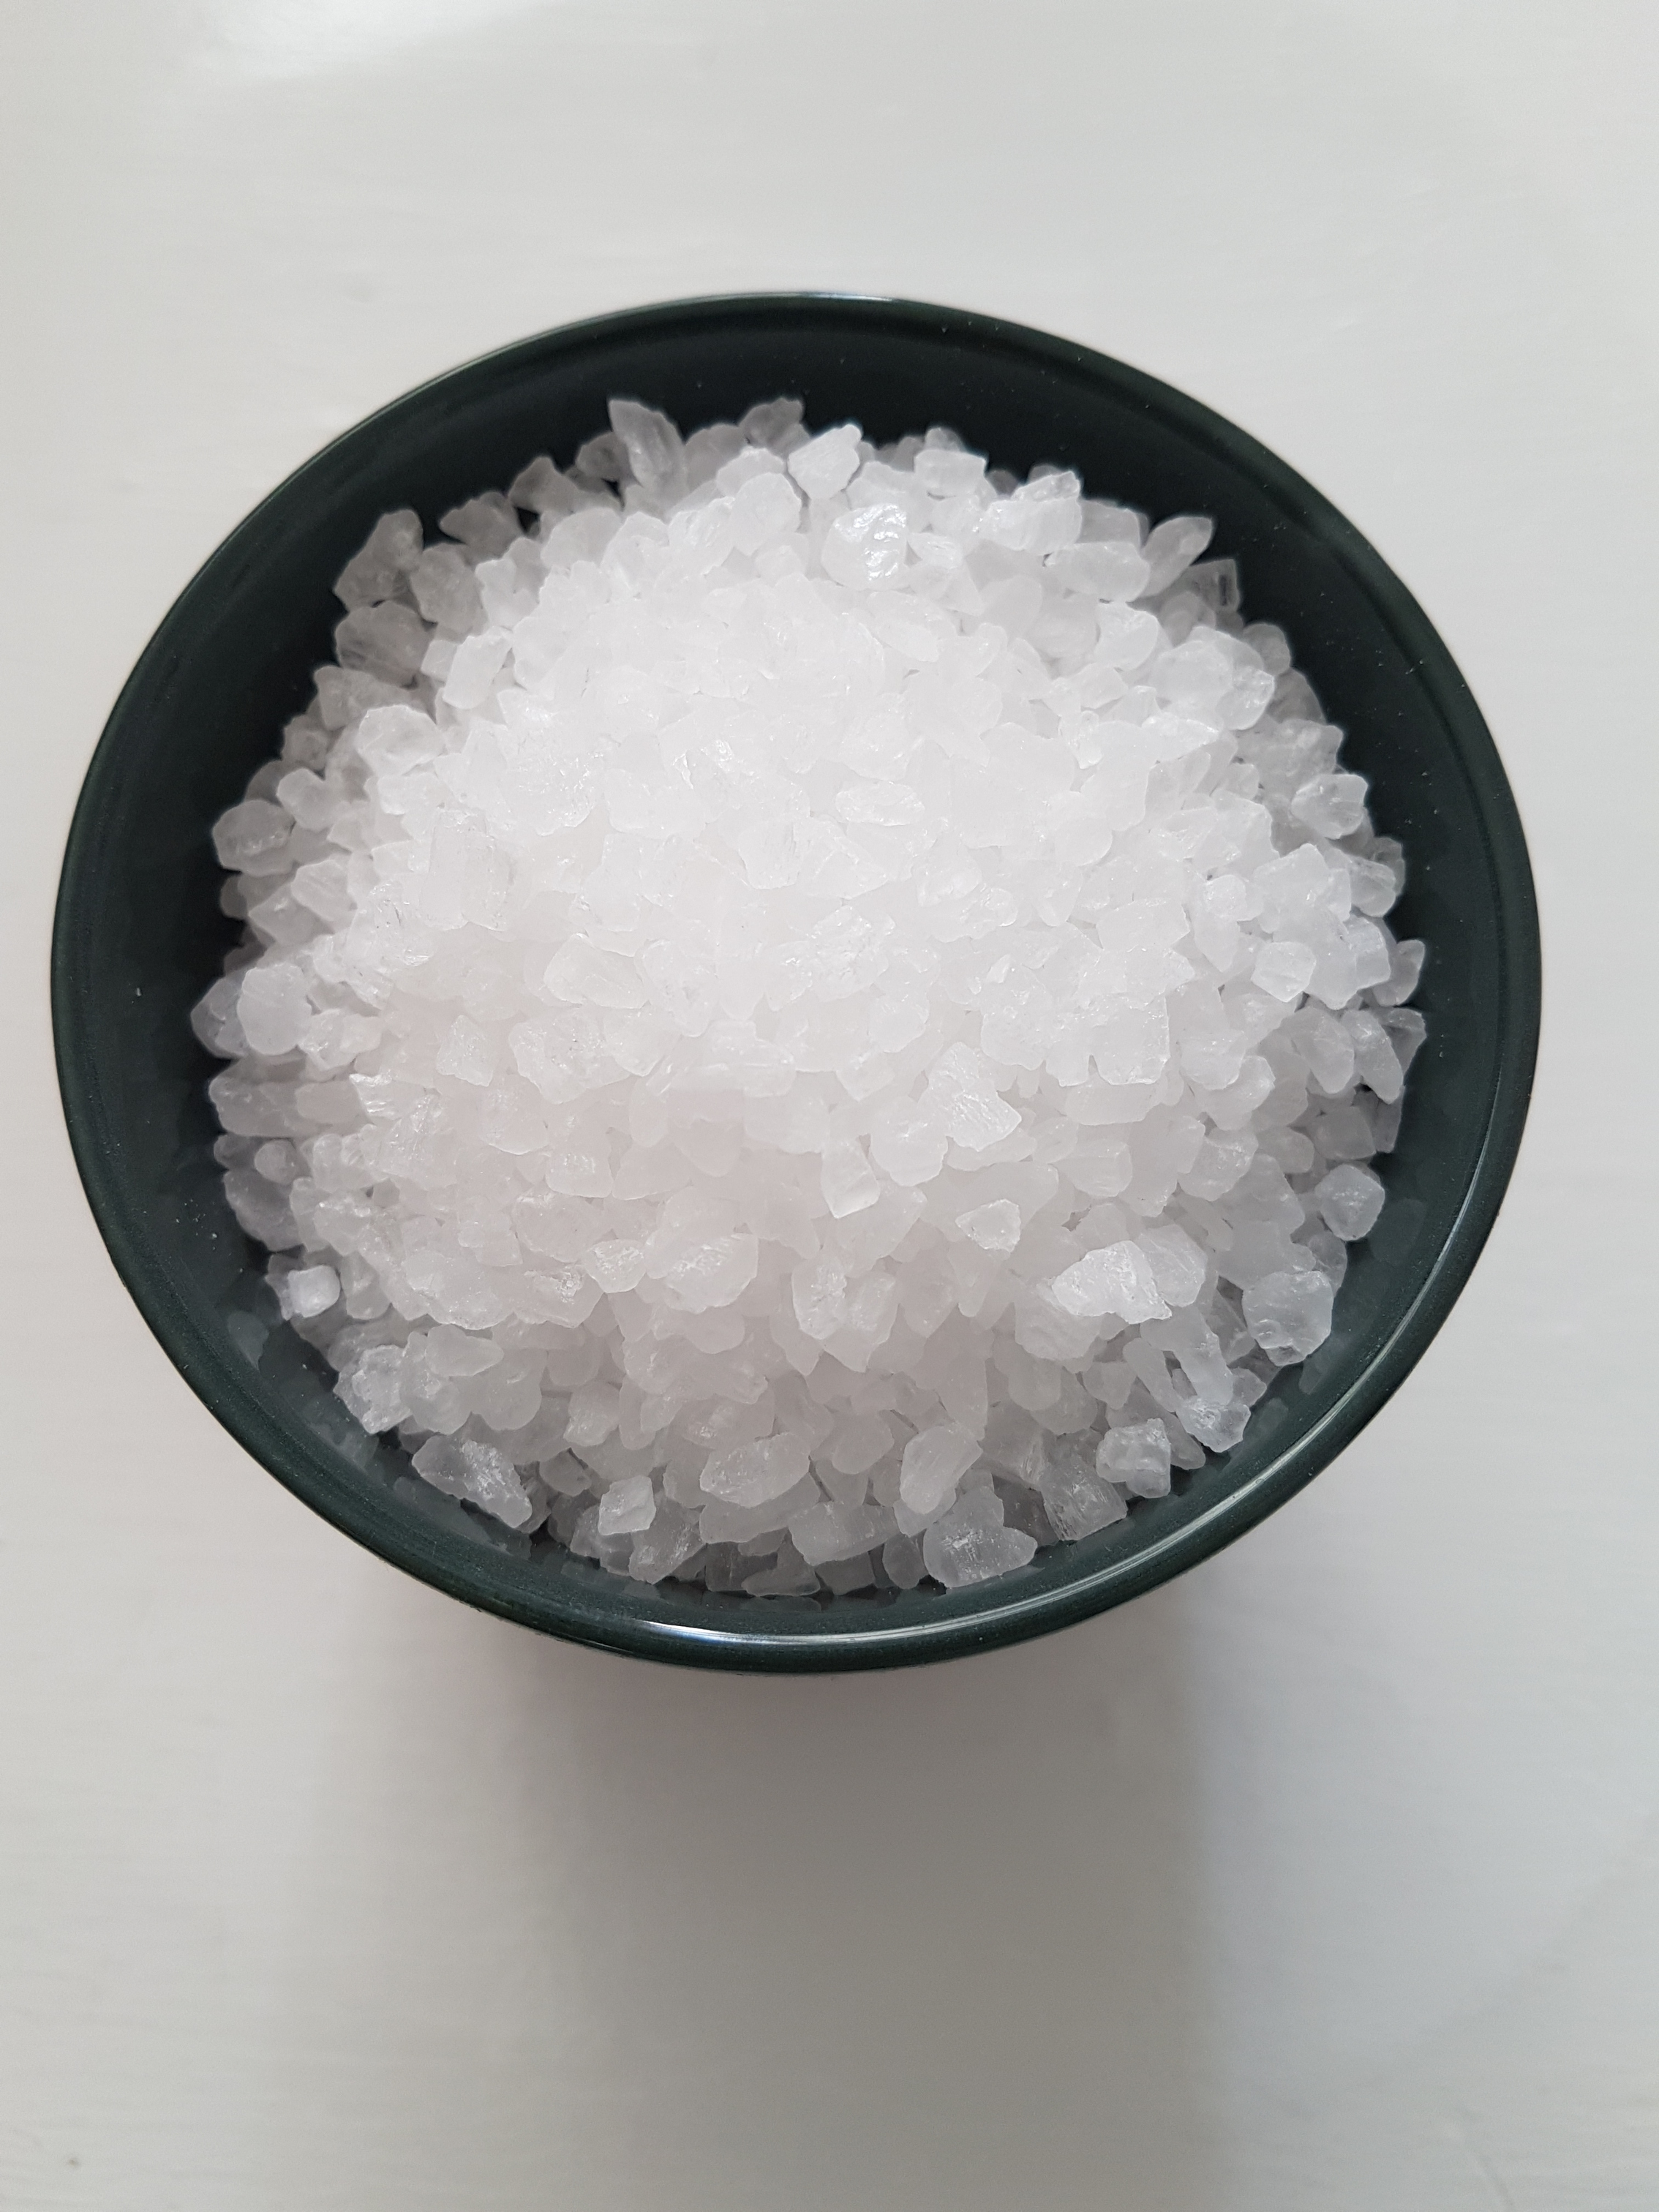 Grobes Salz ist ebenso wie Kieselgel saugfähig und kann günstig im Supermarkt gekauft werden